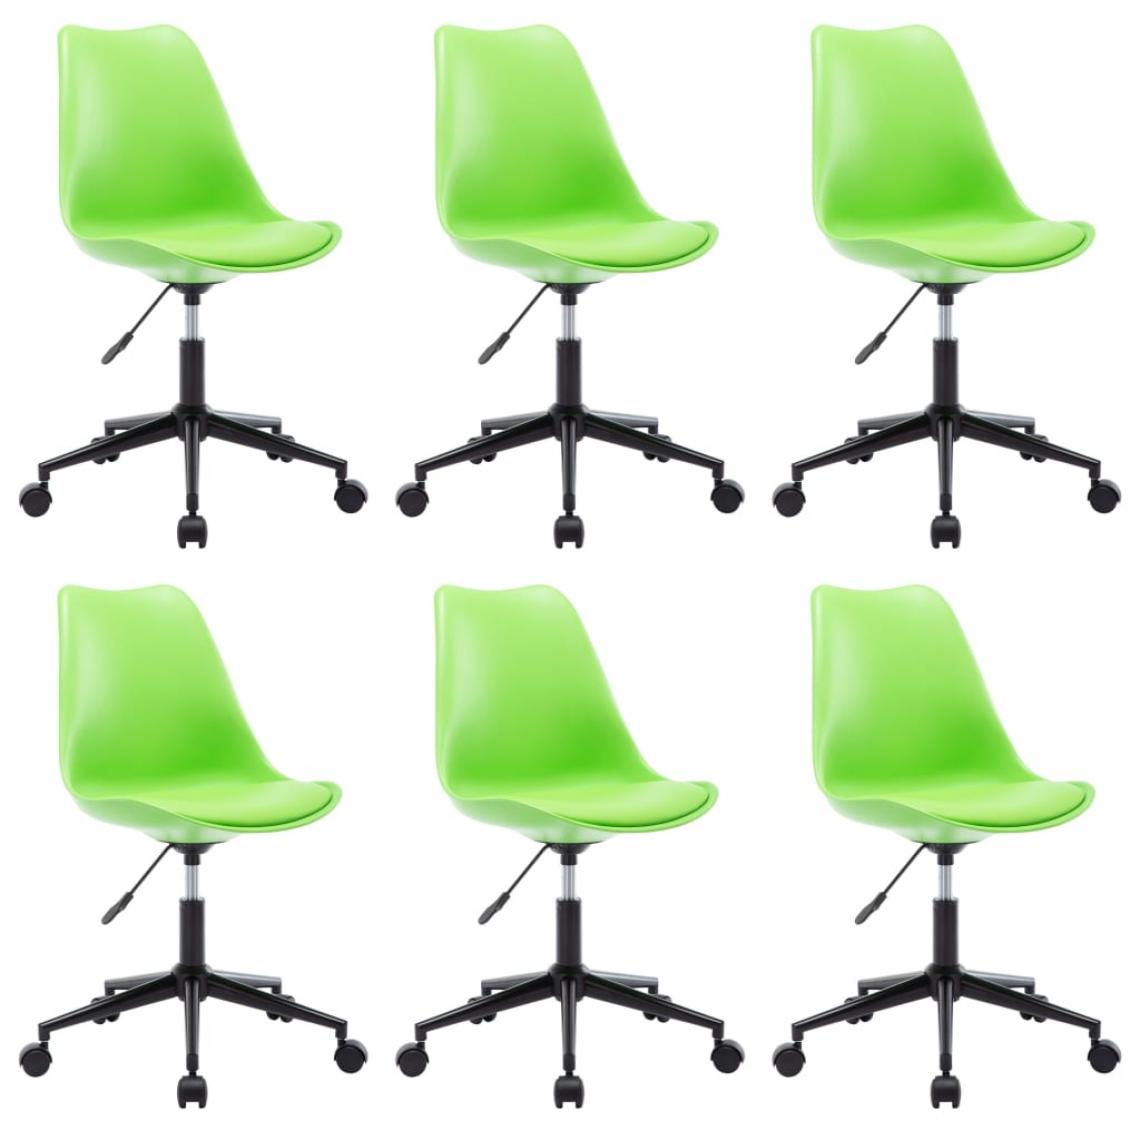 Decoshop26 - Lot de 6 chaises de salle à manger cuisine pivotantes design moderne similicuir vert CDS022774 - Chaises